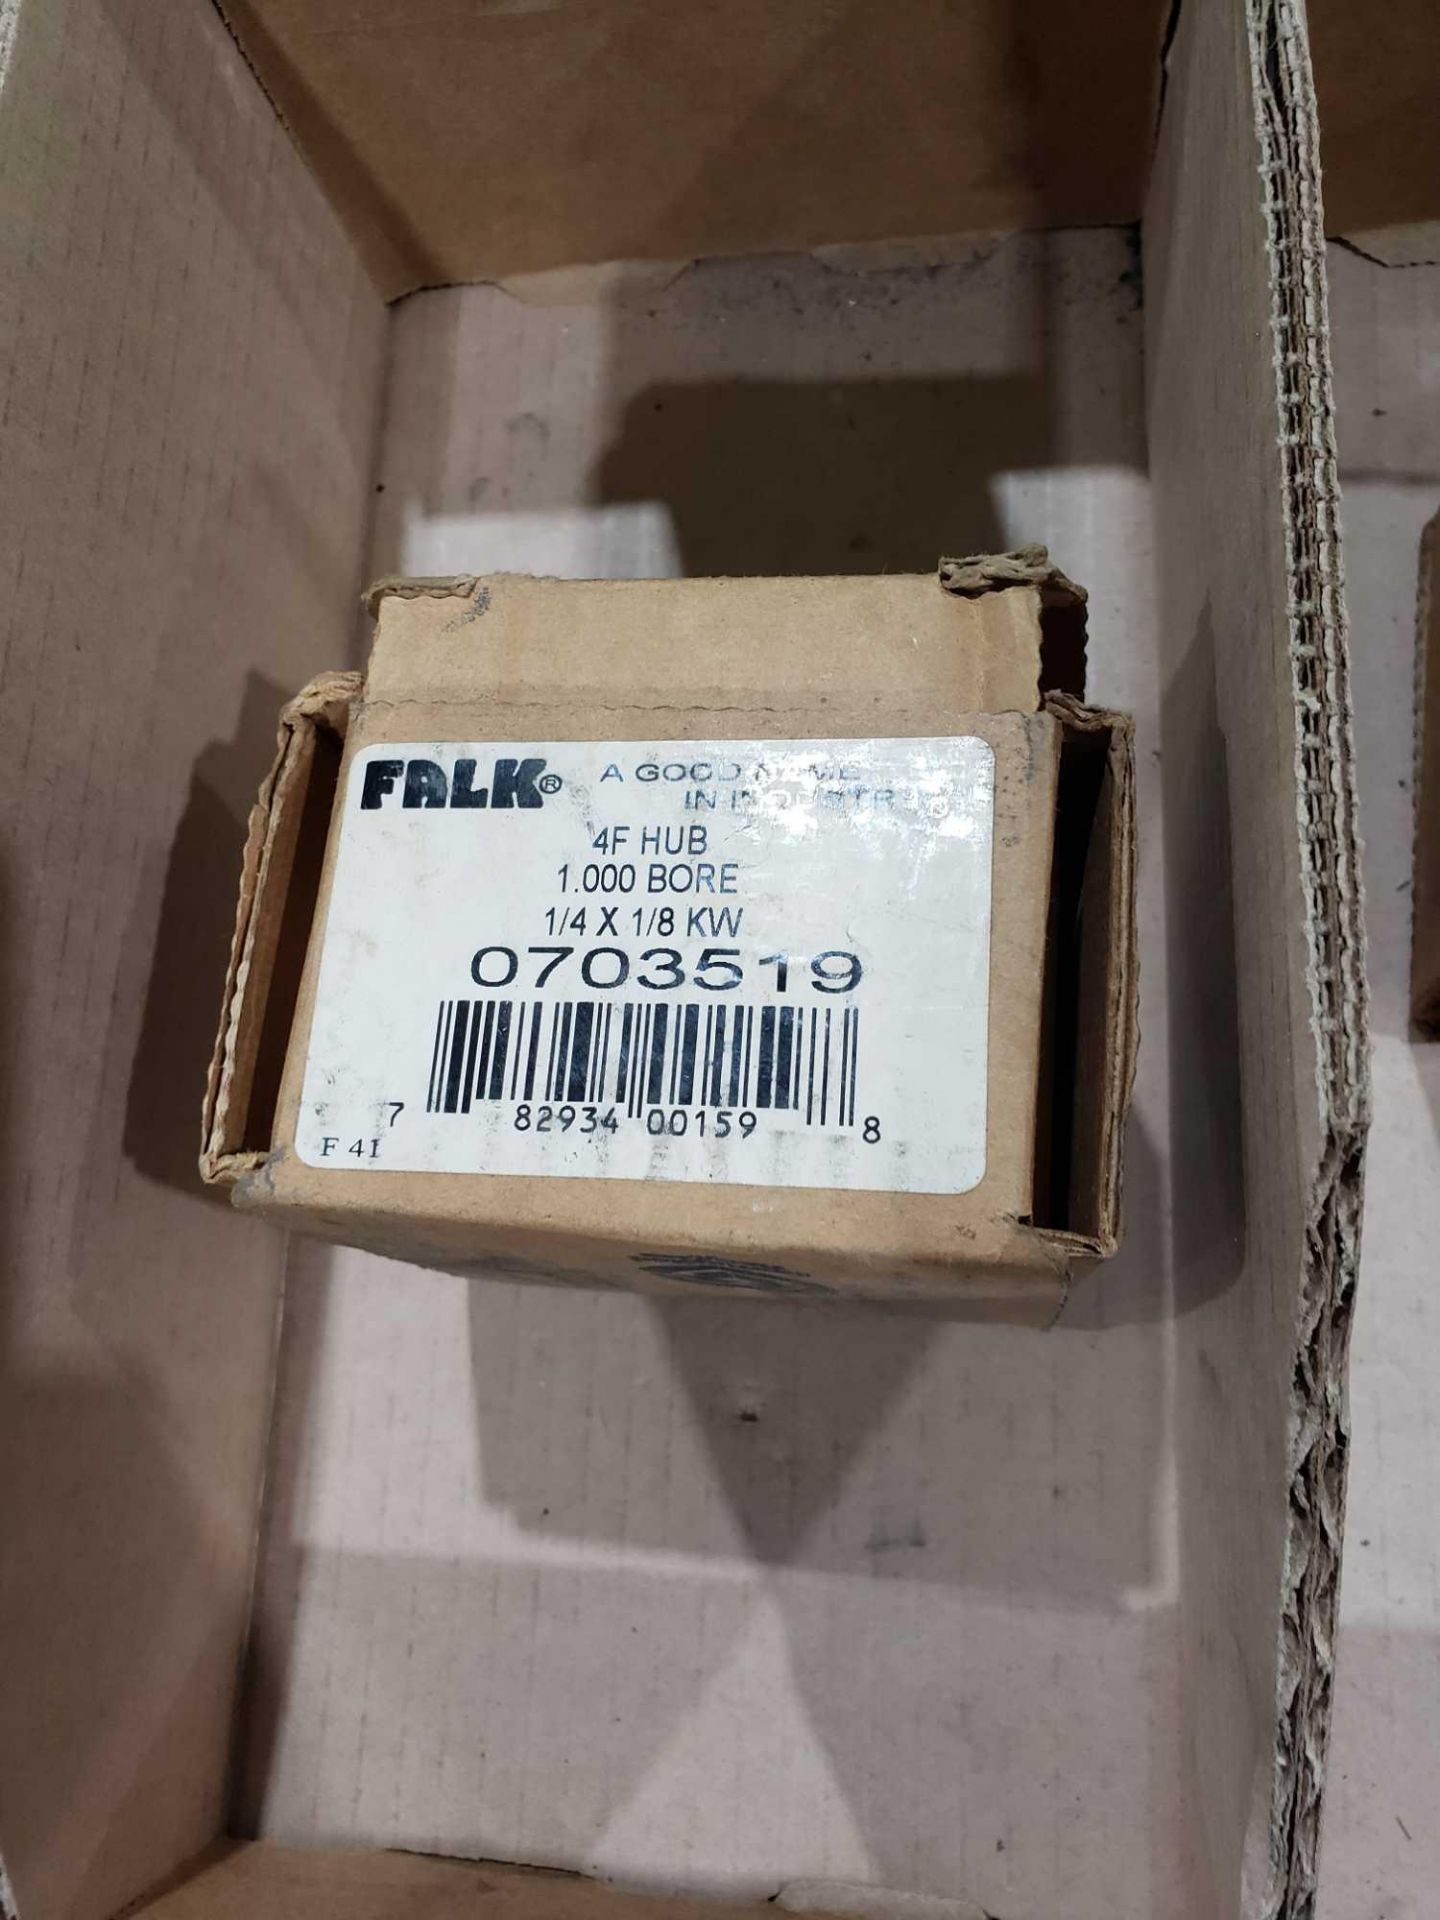 Falk model 0703519. New in box. - Image 2 of 2